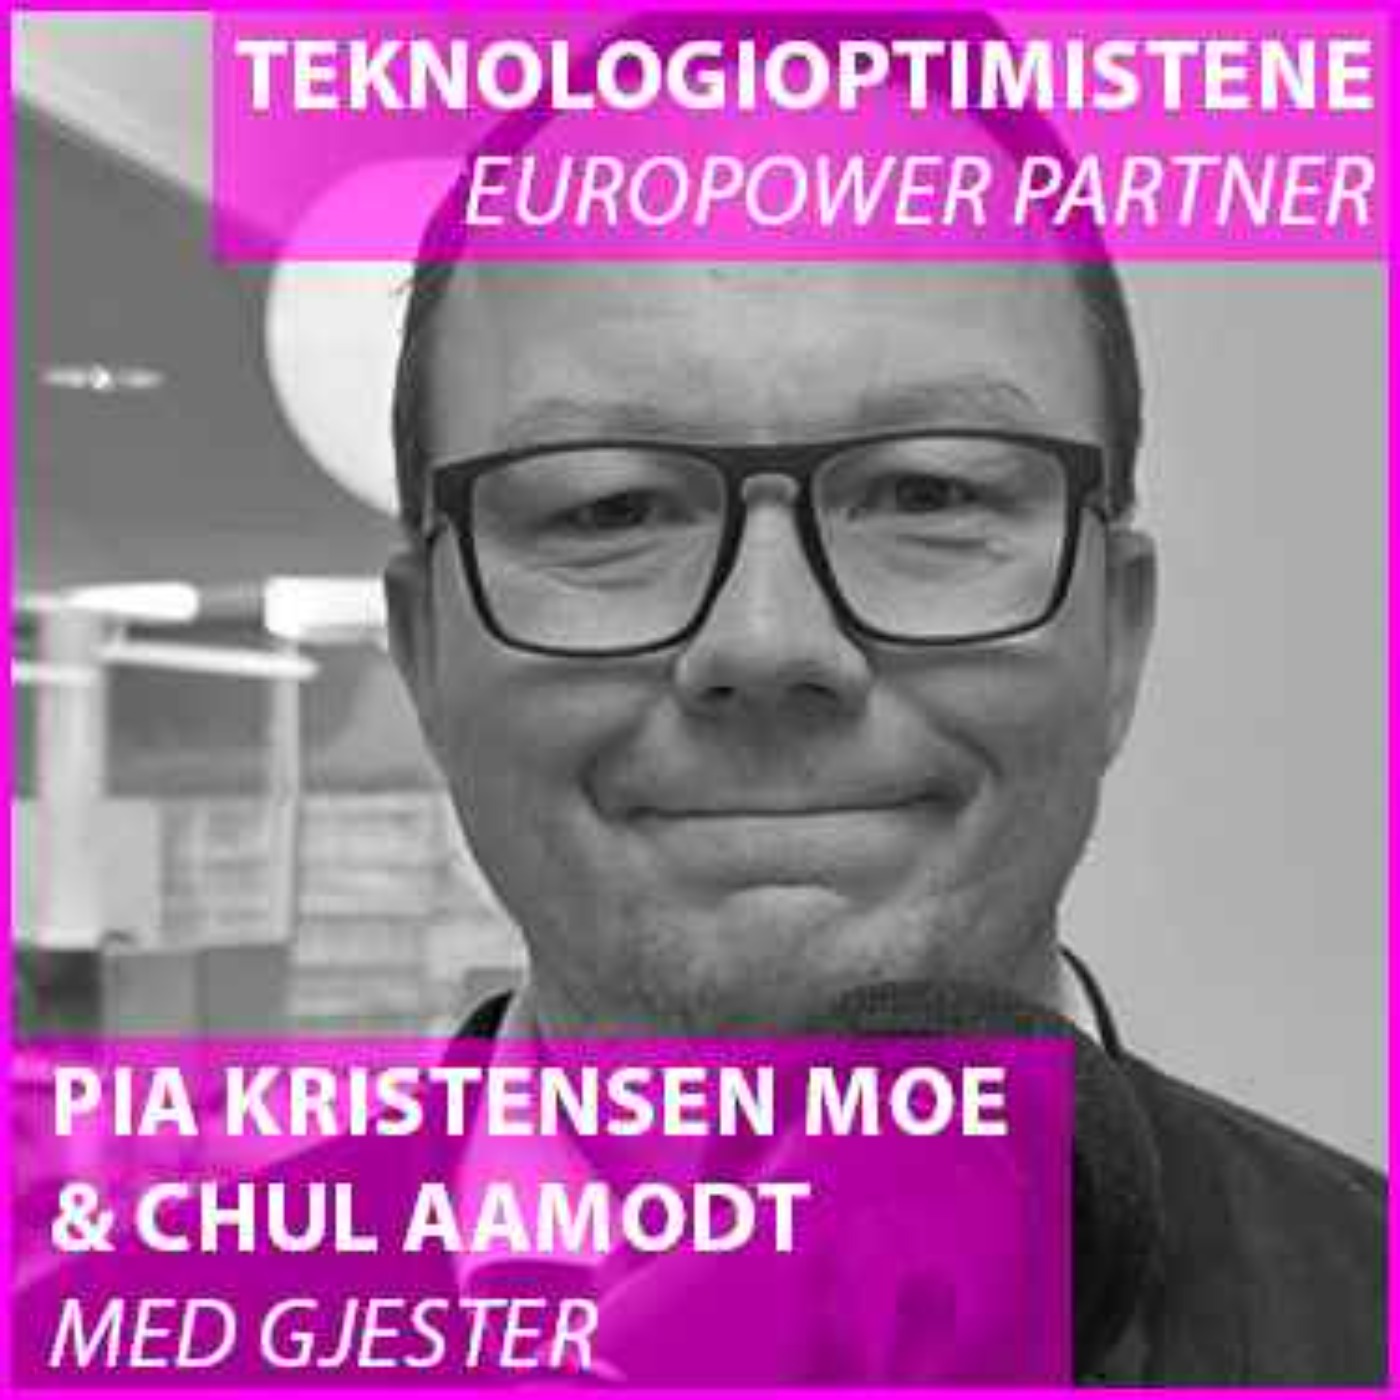 cover art for Teknologioptimistene med Jon Andreas Prestorius, konserndirektør, Eidsiva